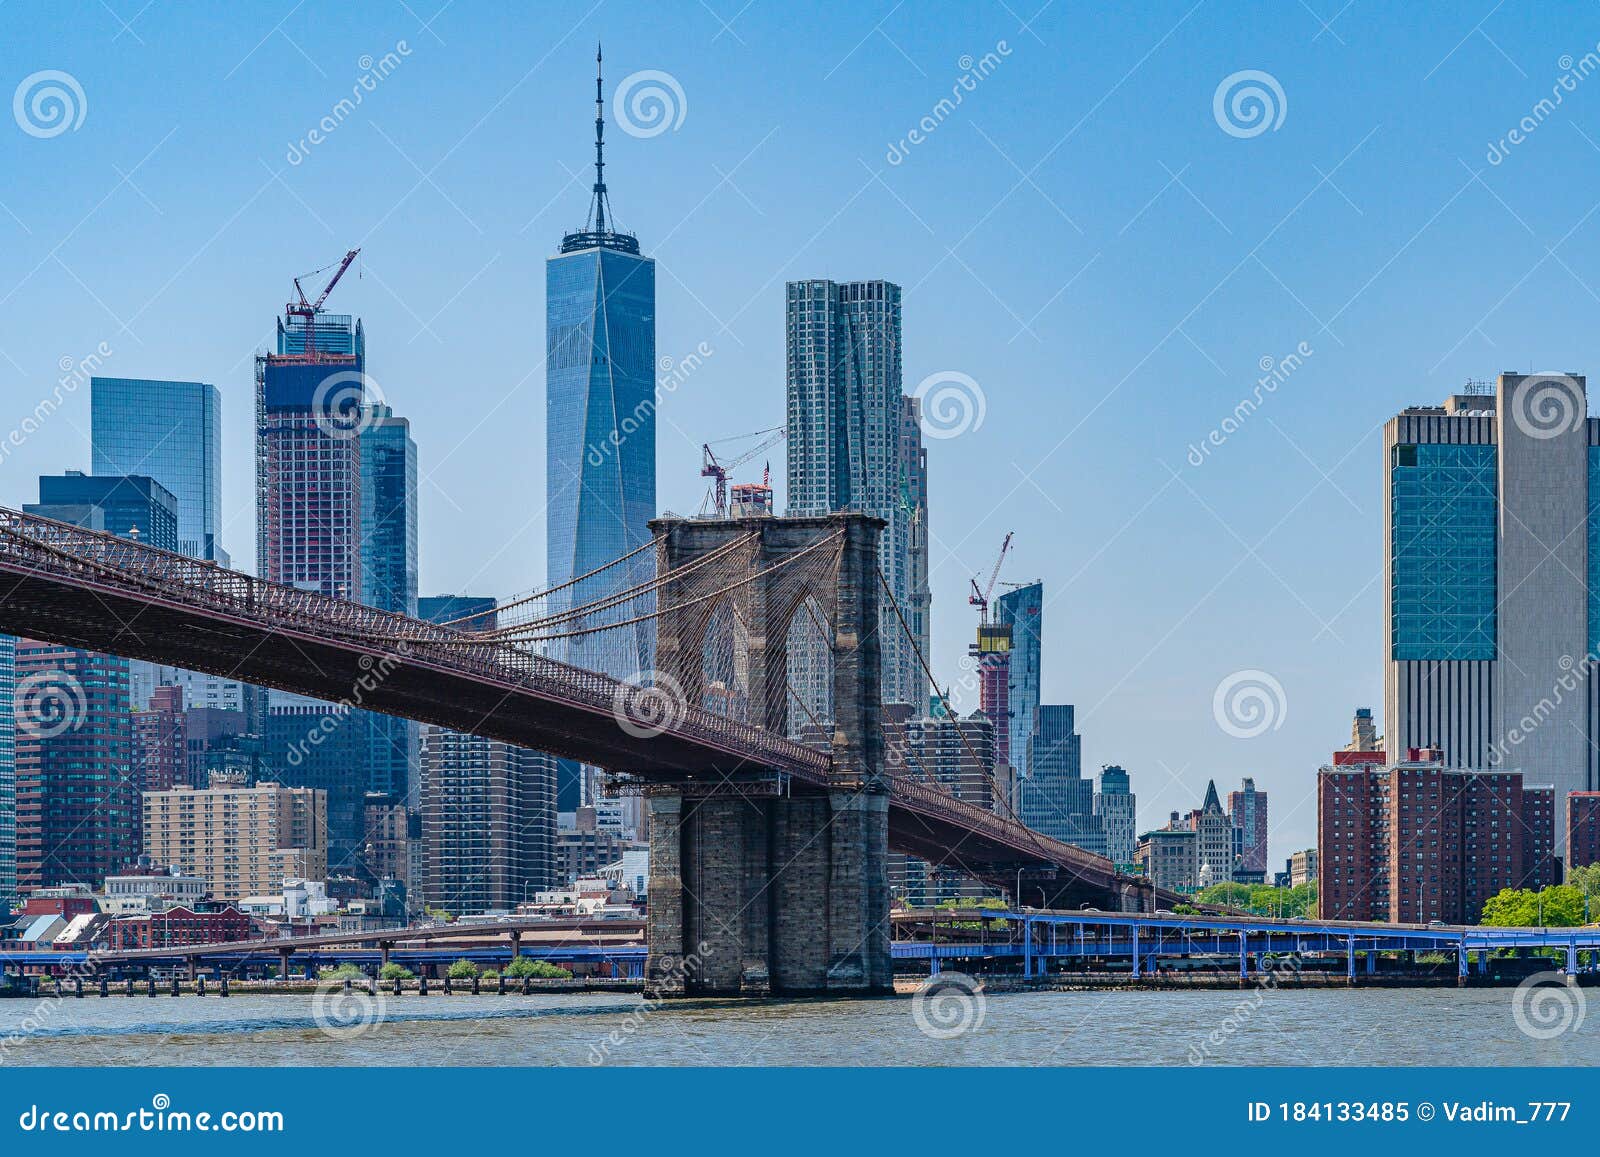 Brooklyn Bridge with Lower Manhattan Skyline, One World Trade Center in ...